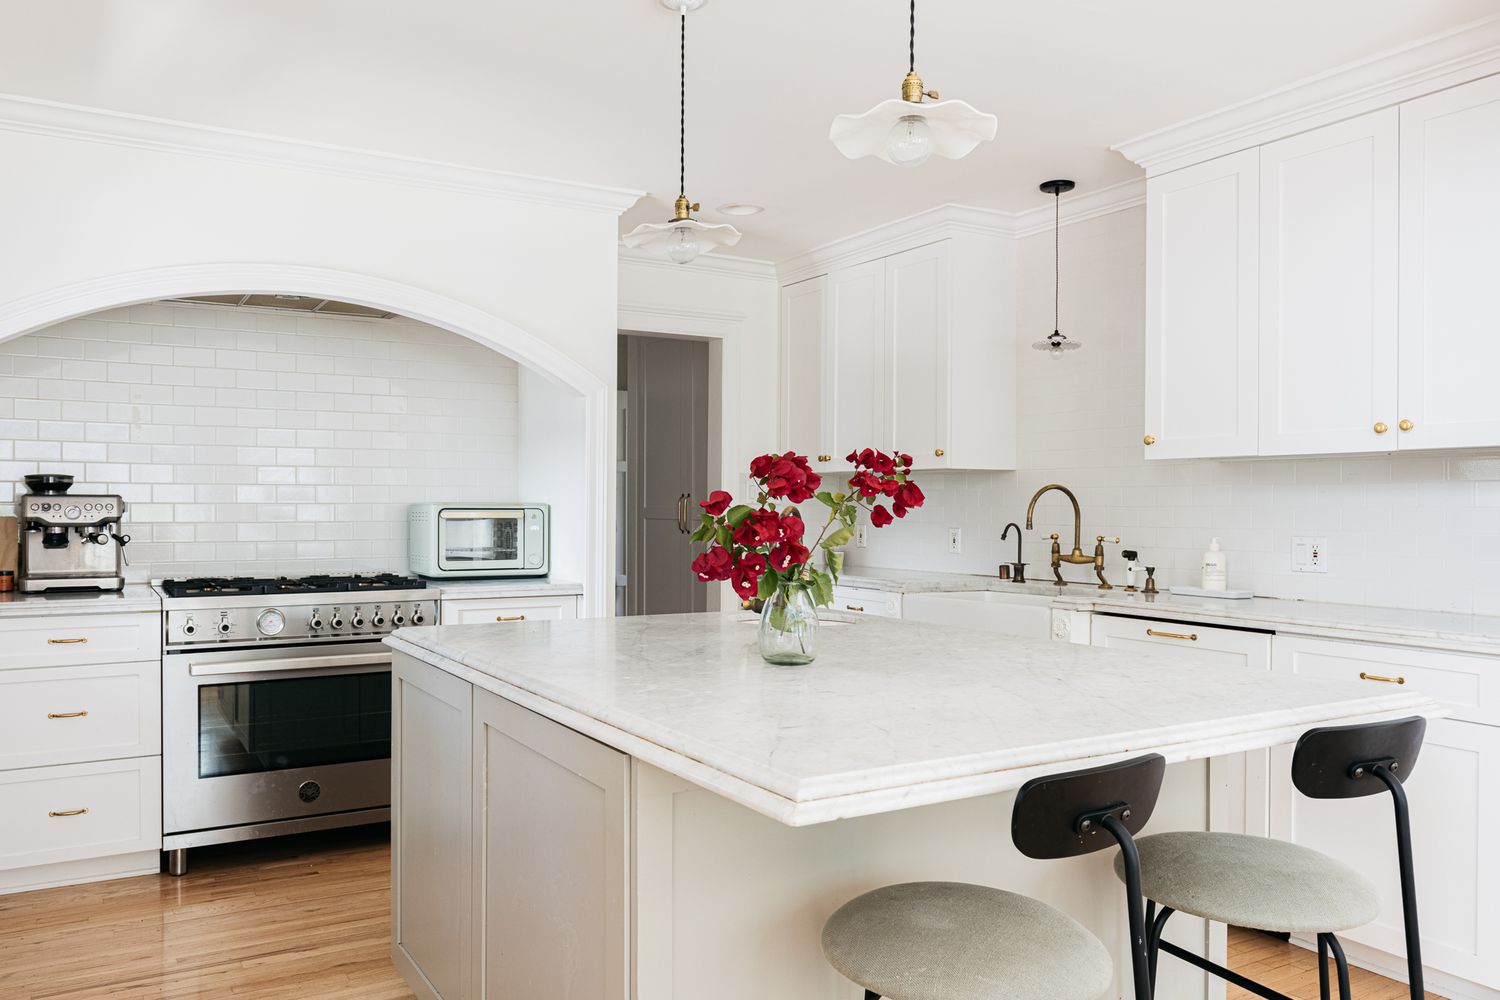 Weiße Küchenschränke in einer komplett weißen Küche mit roten Rosen in der Mitte